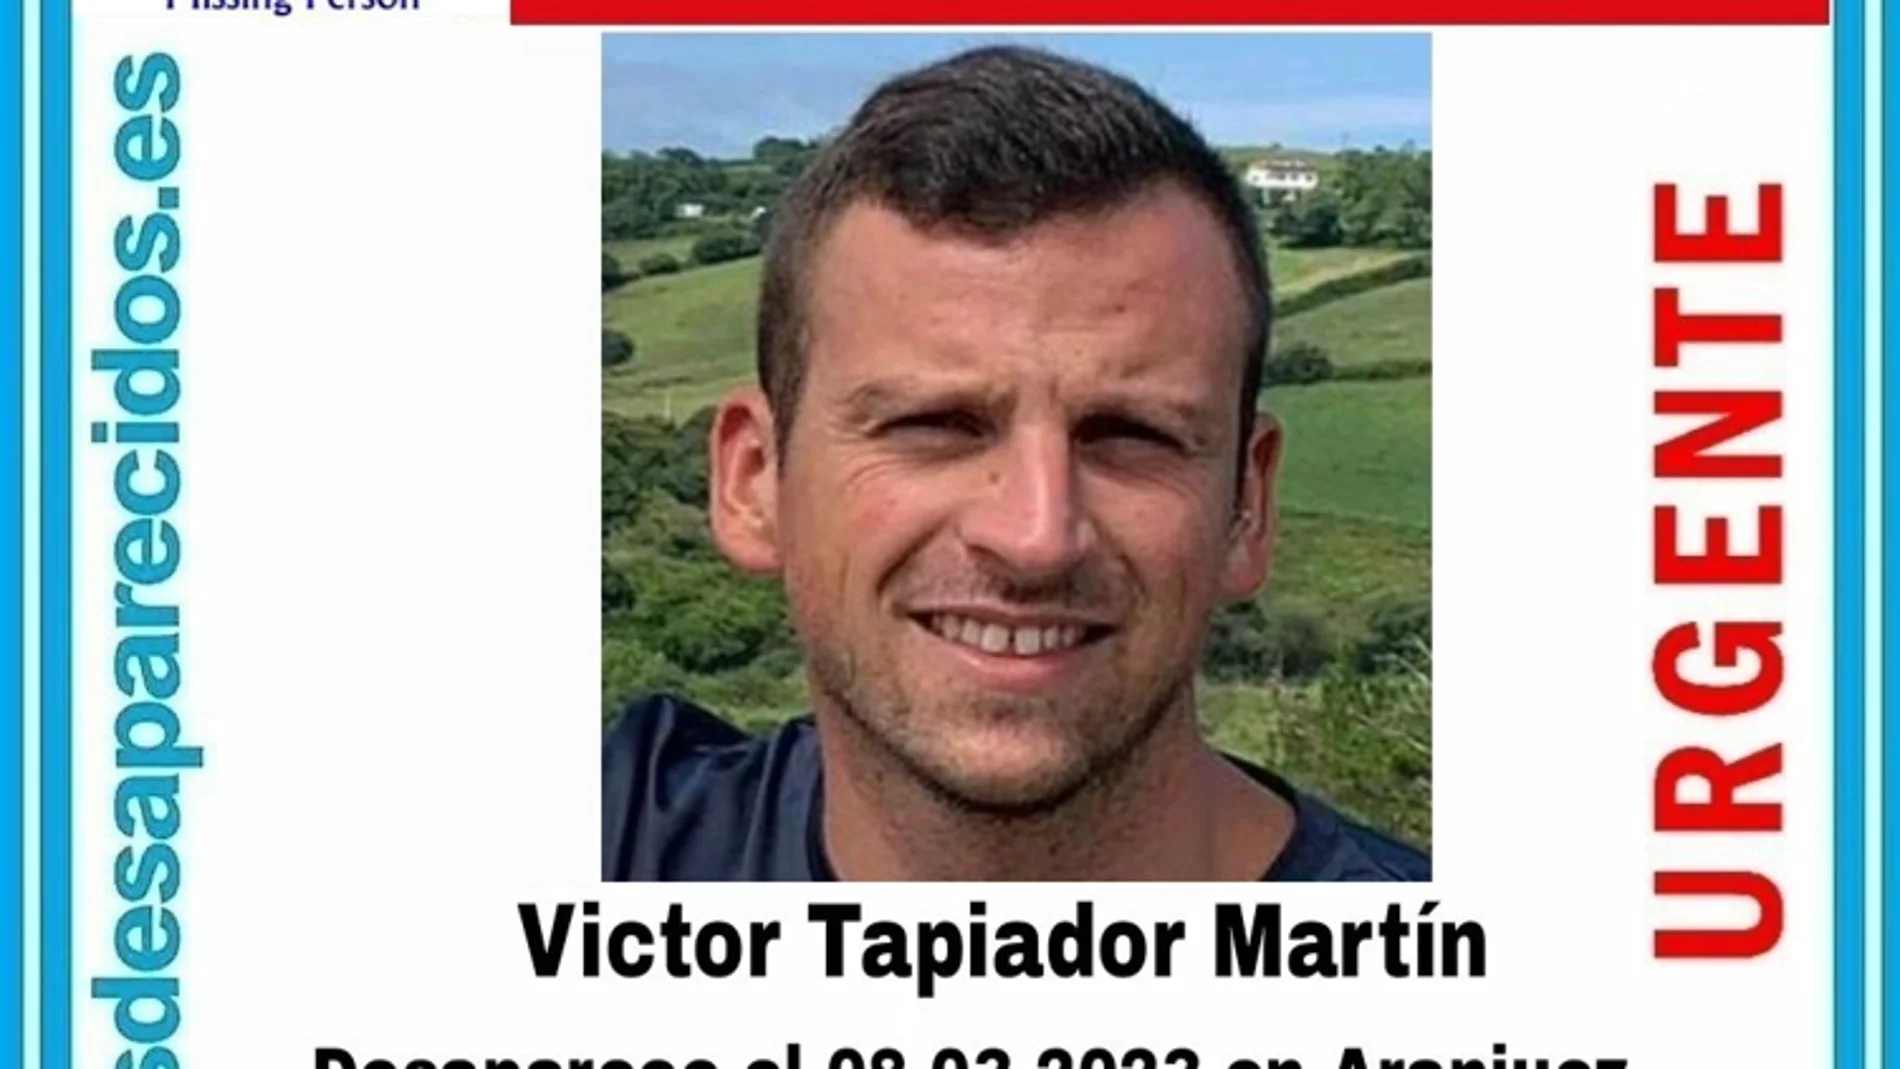 Victor Tapiador Martín, el joven de 25 años desaparecido en Aranjuez